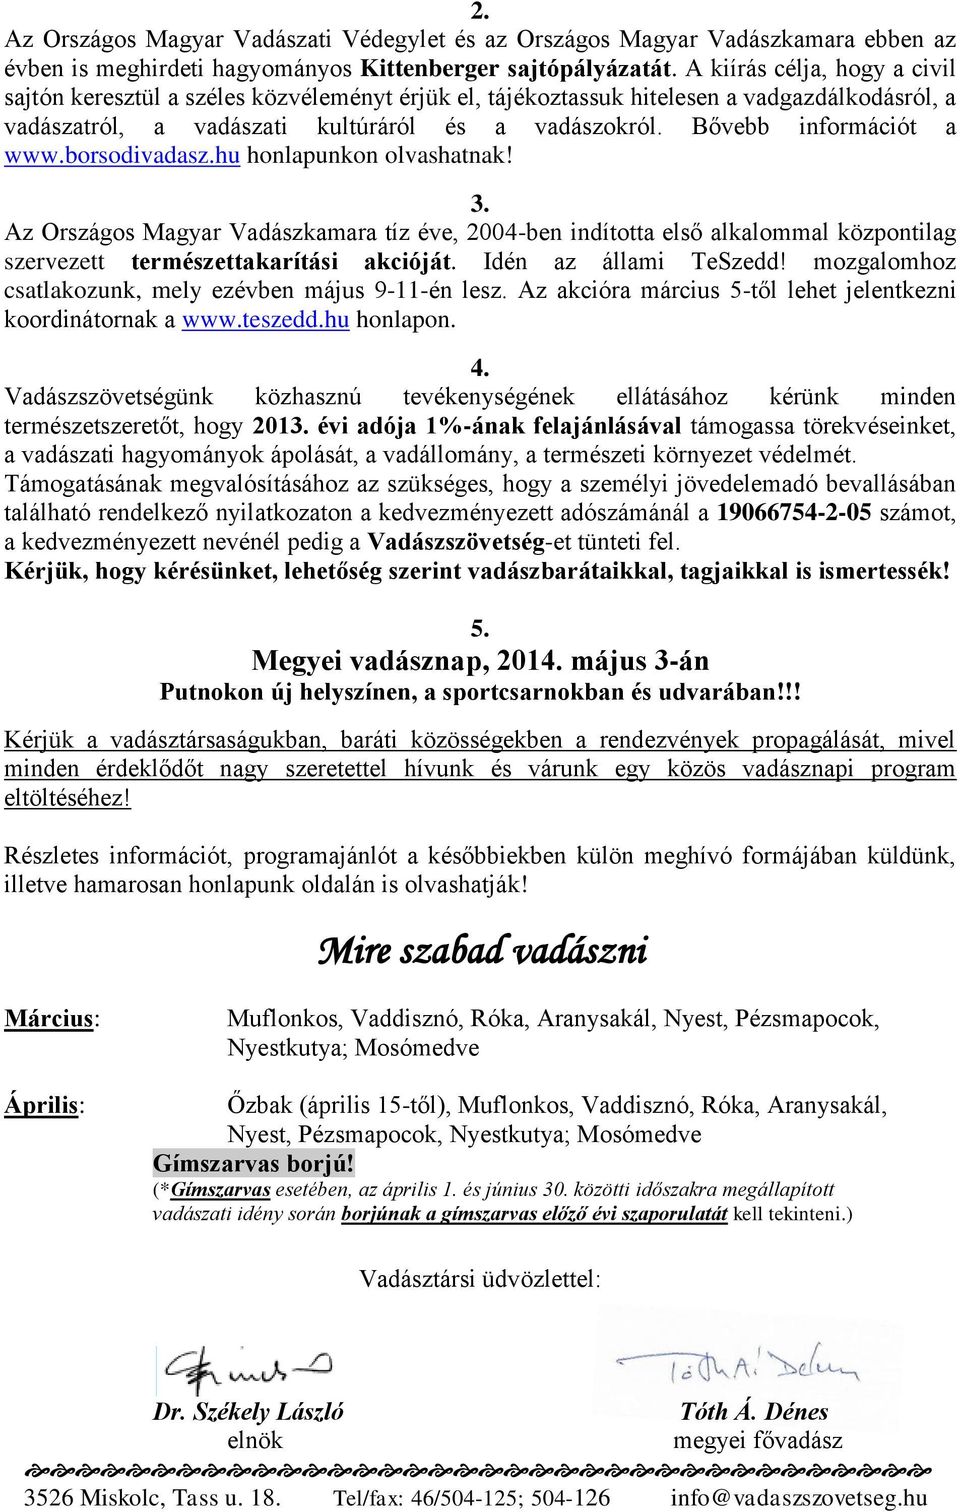 Bővebb információt a www.borsodivadasz.hu honlapunkon olvashatnak! 3. Az Országos Magyar Vadászkamara tíz éve, 2004-ben indította első alkalommal központilag szervezett természettakarítási akcióját.